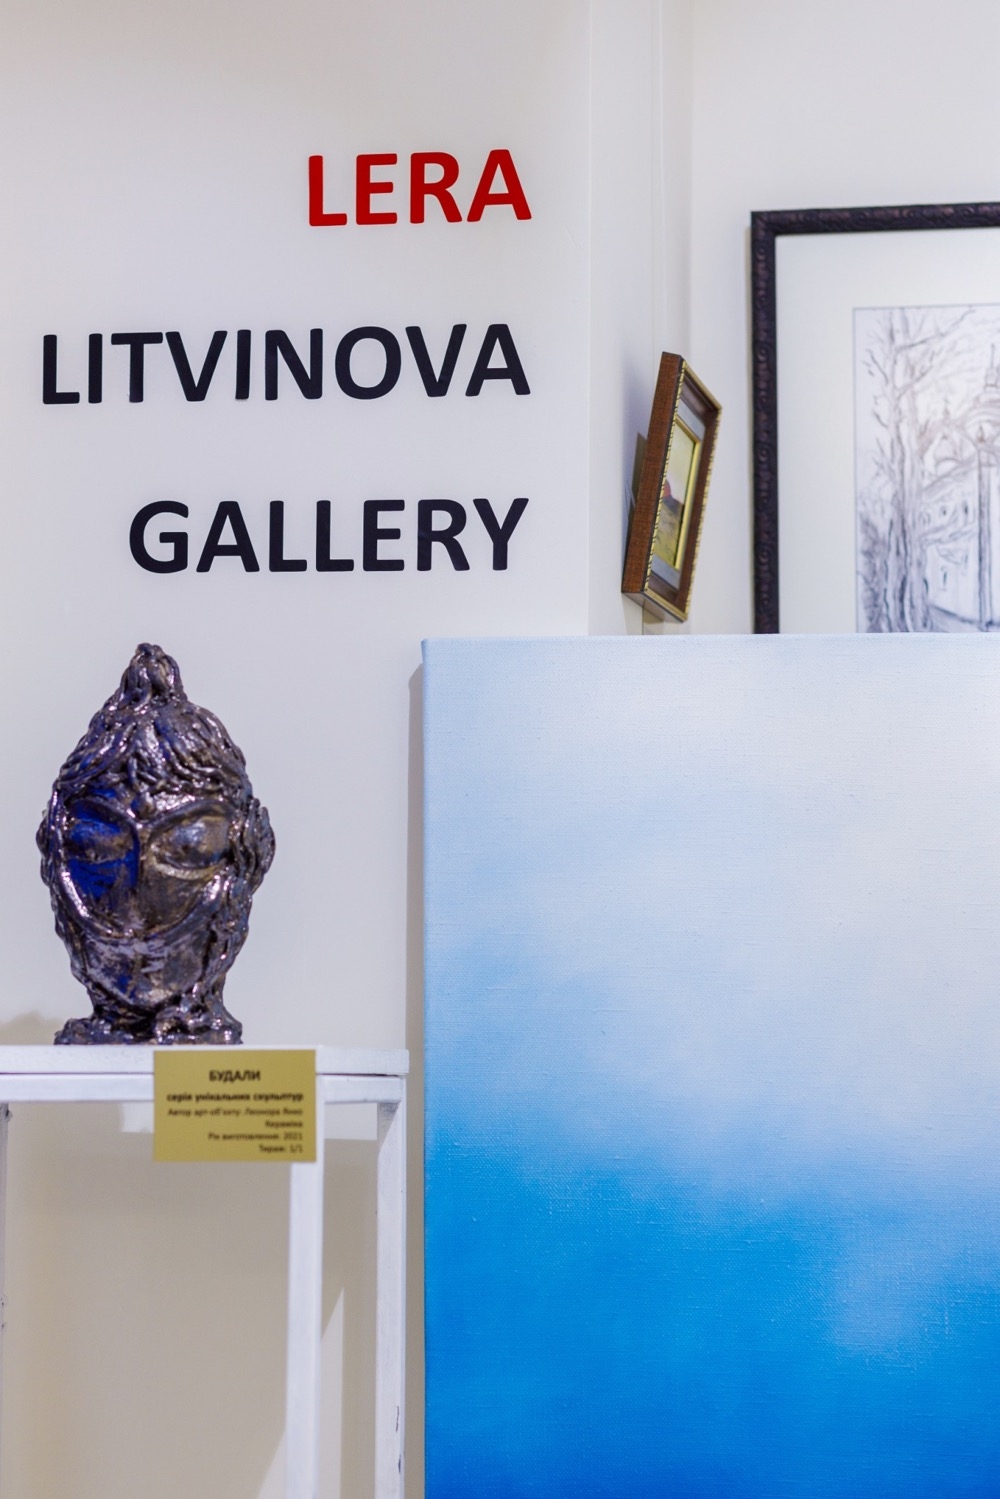 Арт-пространство Lera Litvinova Gallery открылось по новому адресу в Киеве (ФОТО) - фото №3